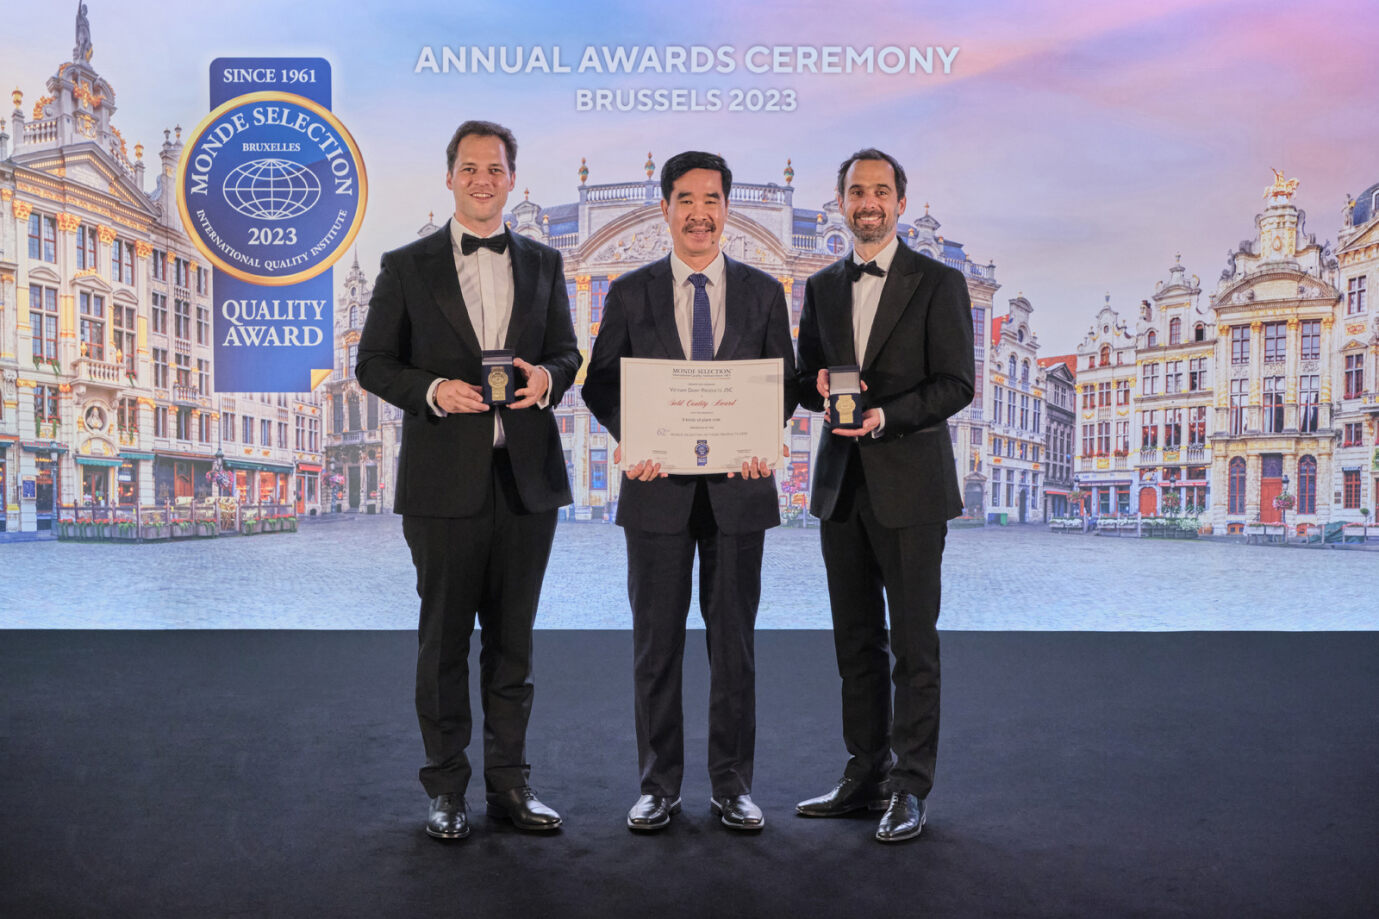 Ông Nguyễn Quốc Khánh, Giám đốc điều hành Nghiên cứu và Phát triển đại diện Vinamilk (ở giữa) nhận 2 giải Vàng về Chất lượng từ tổ chức Monde Selection.